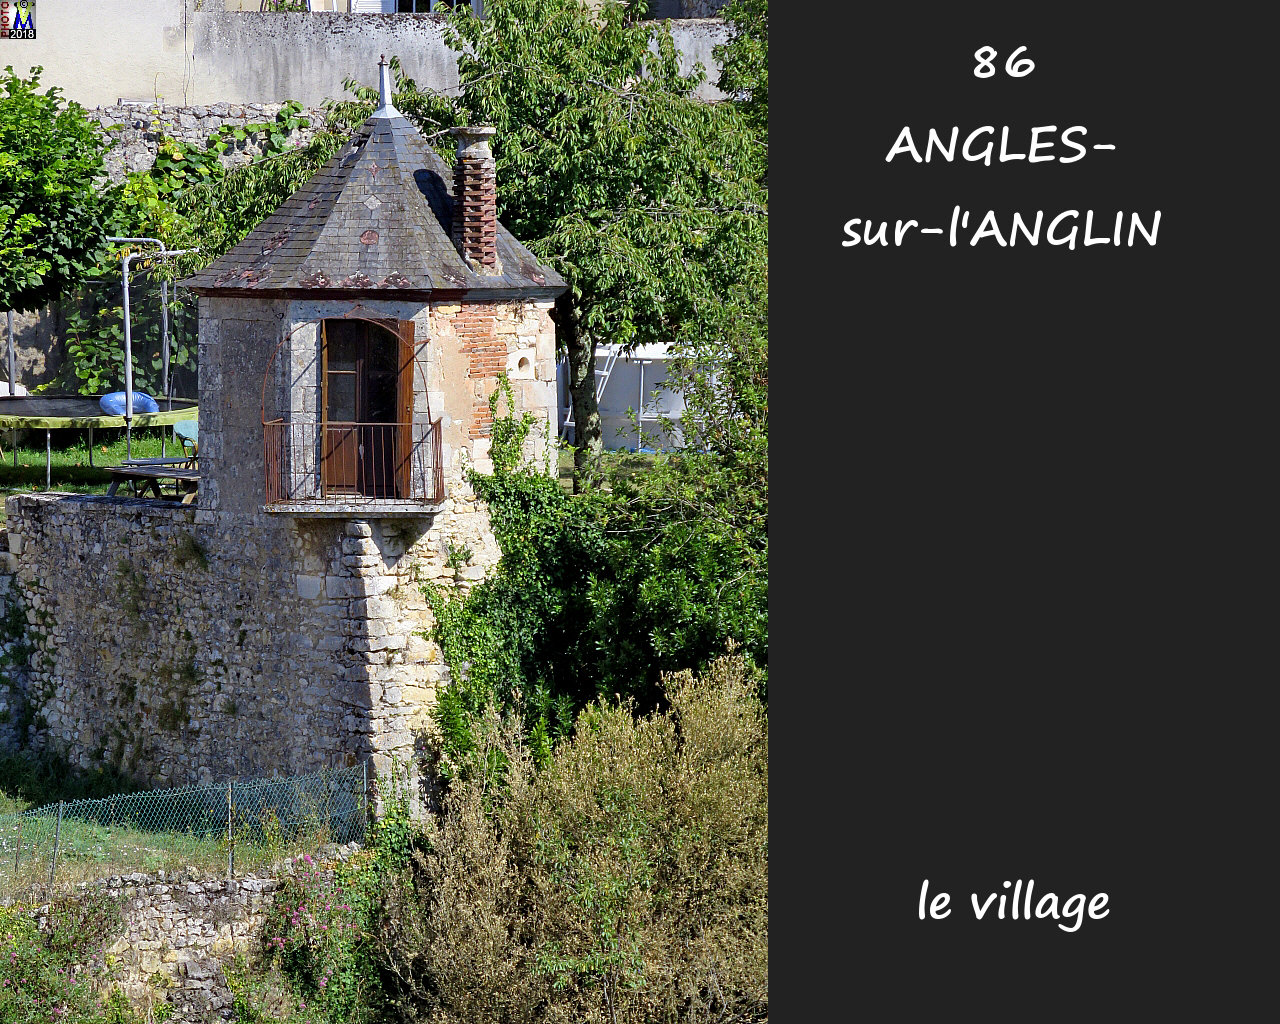 86ANGLES-S-ANGLIN_village_1100.jpg